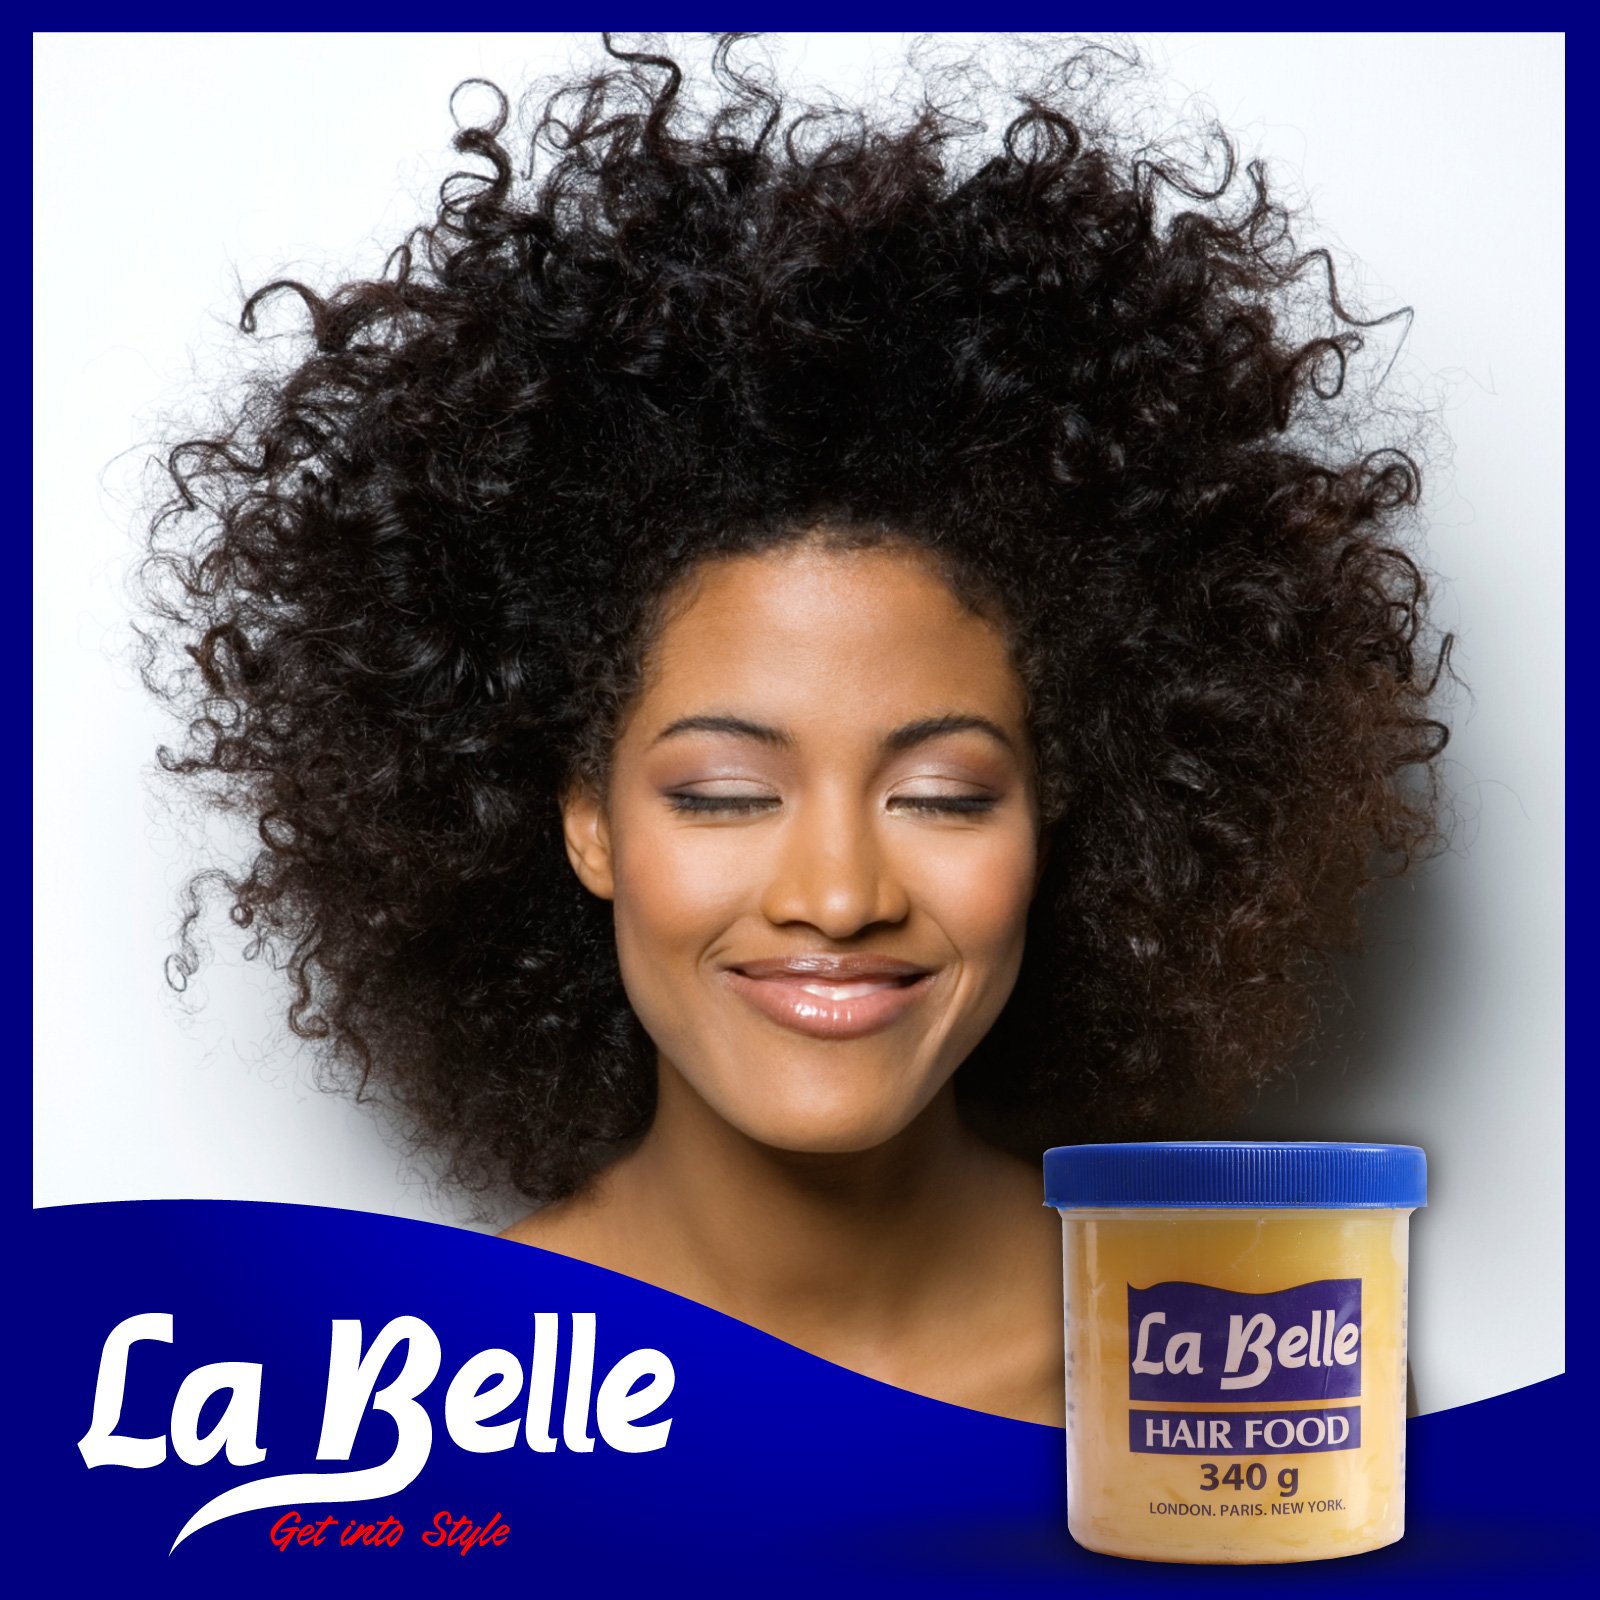 La Belle Cosmetics on Twitter: 